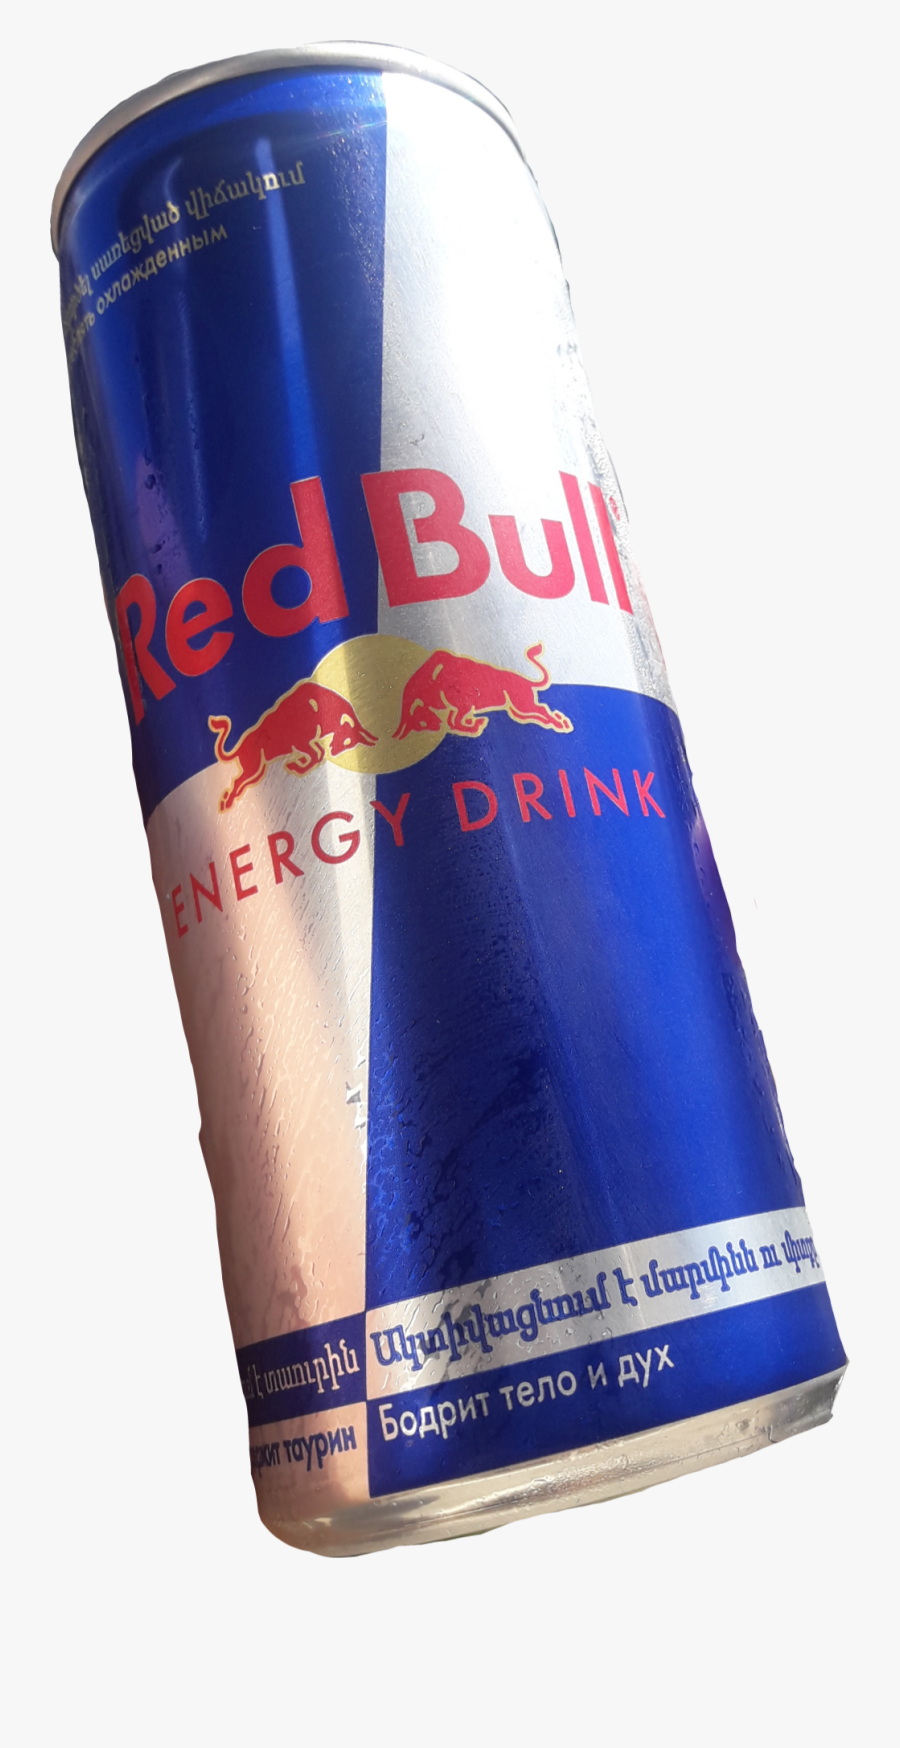 #redbull #energydrink - Red Bull, Transparent Clipart